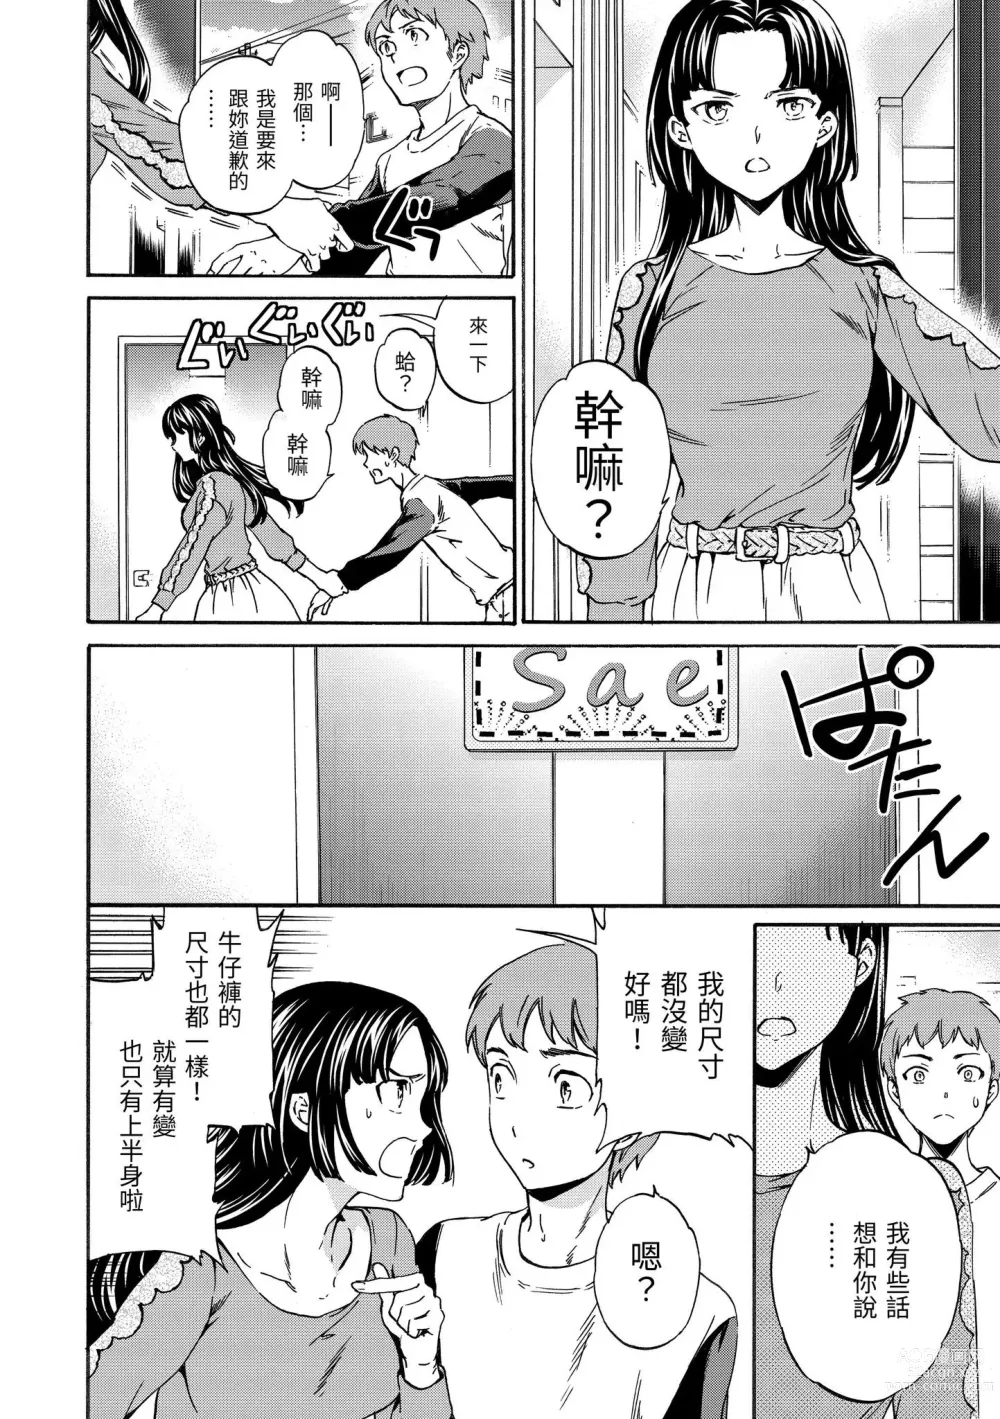 Page 201 of manga 柔情泥濘